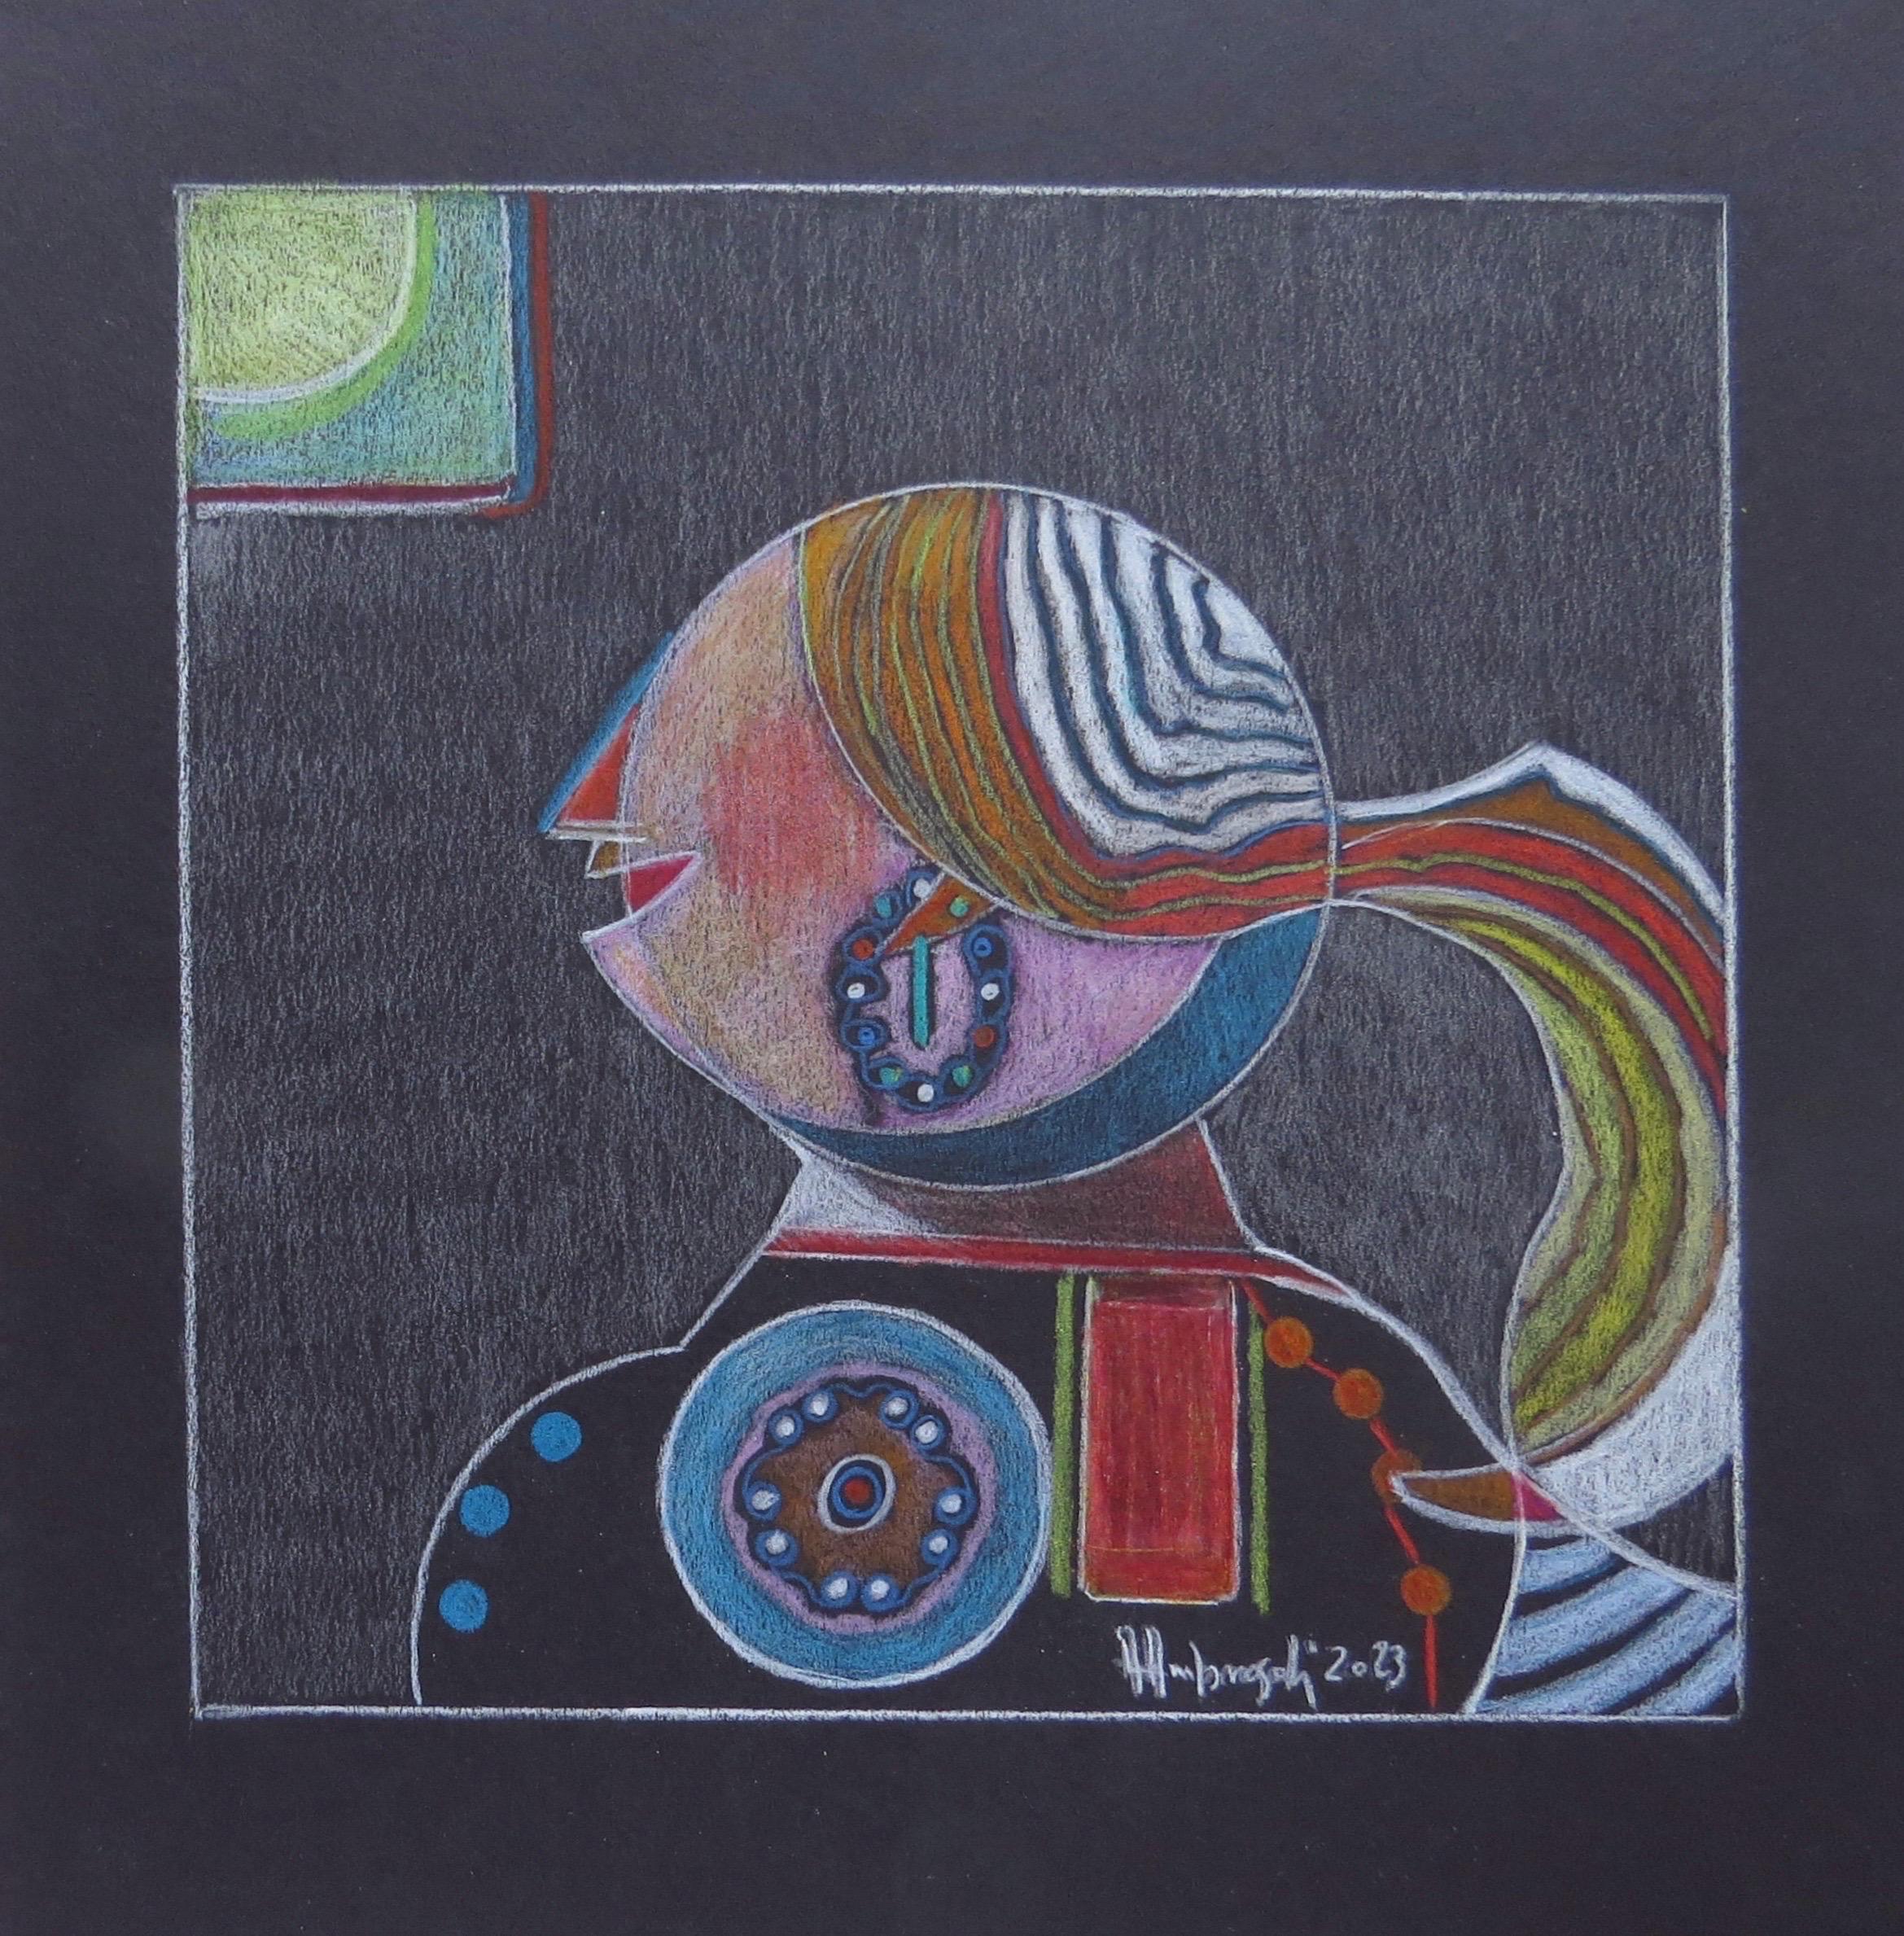 Shining (2023) cm 21x21, von der italienischen Künstlerin Annemarie Ambrosoli, ist eine farbige Zeichnung mit Farbstift auf schwarzem Karton, die 29x26,5 cm misst.
Dieses Werk ist ein Unikat. Es ist ungerahmt. Handsigniert vom Künstler in der